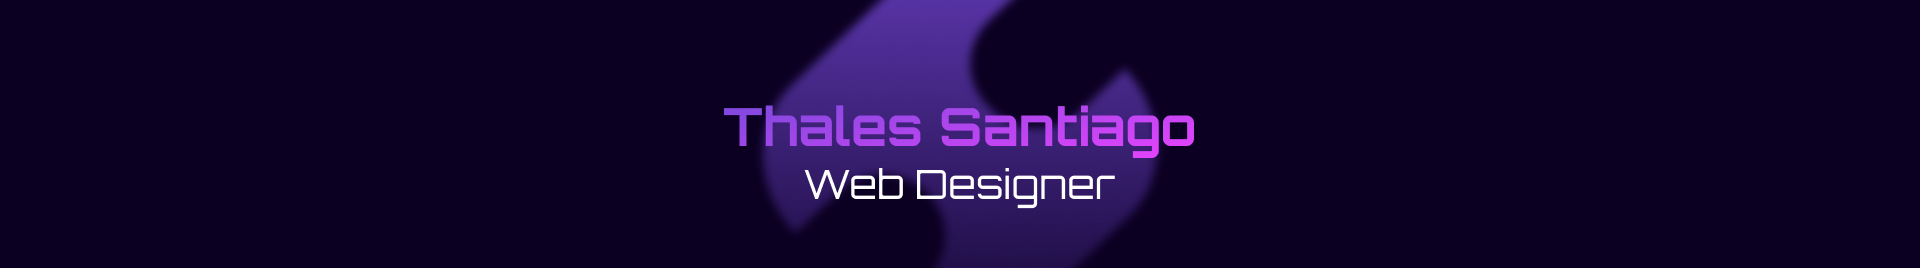 Banner de perfil de Thales Santiago